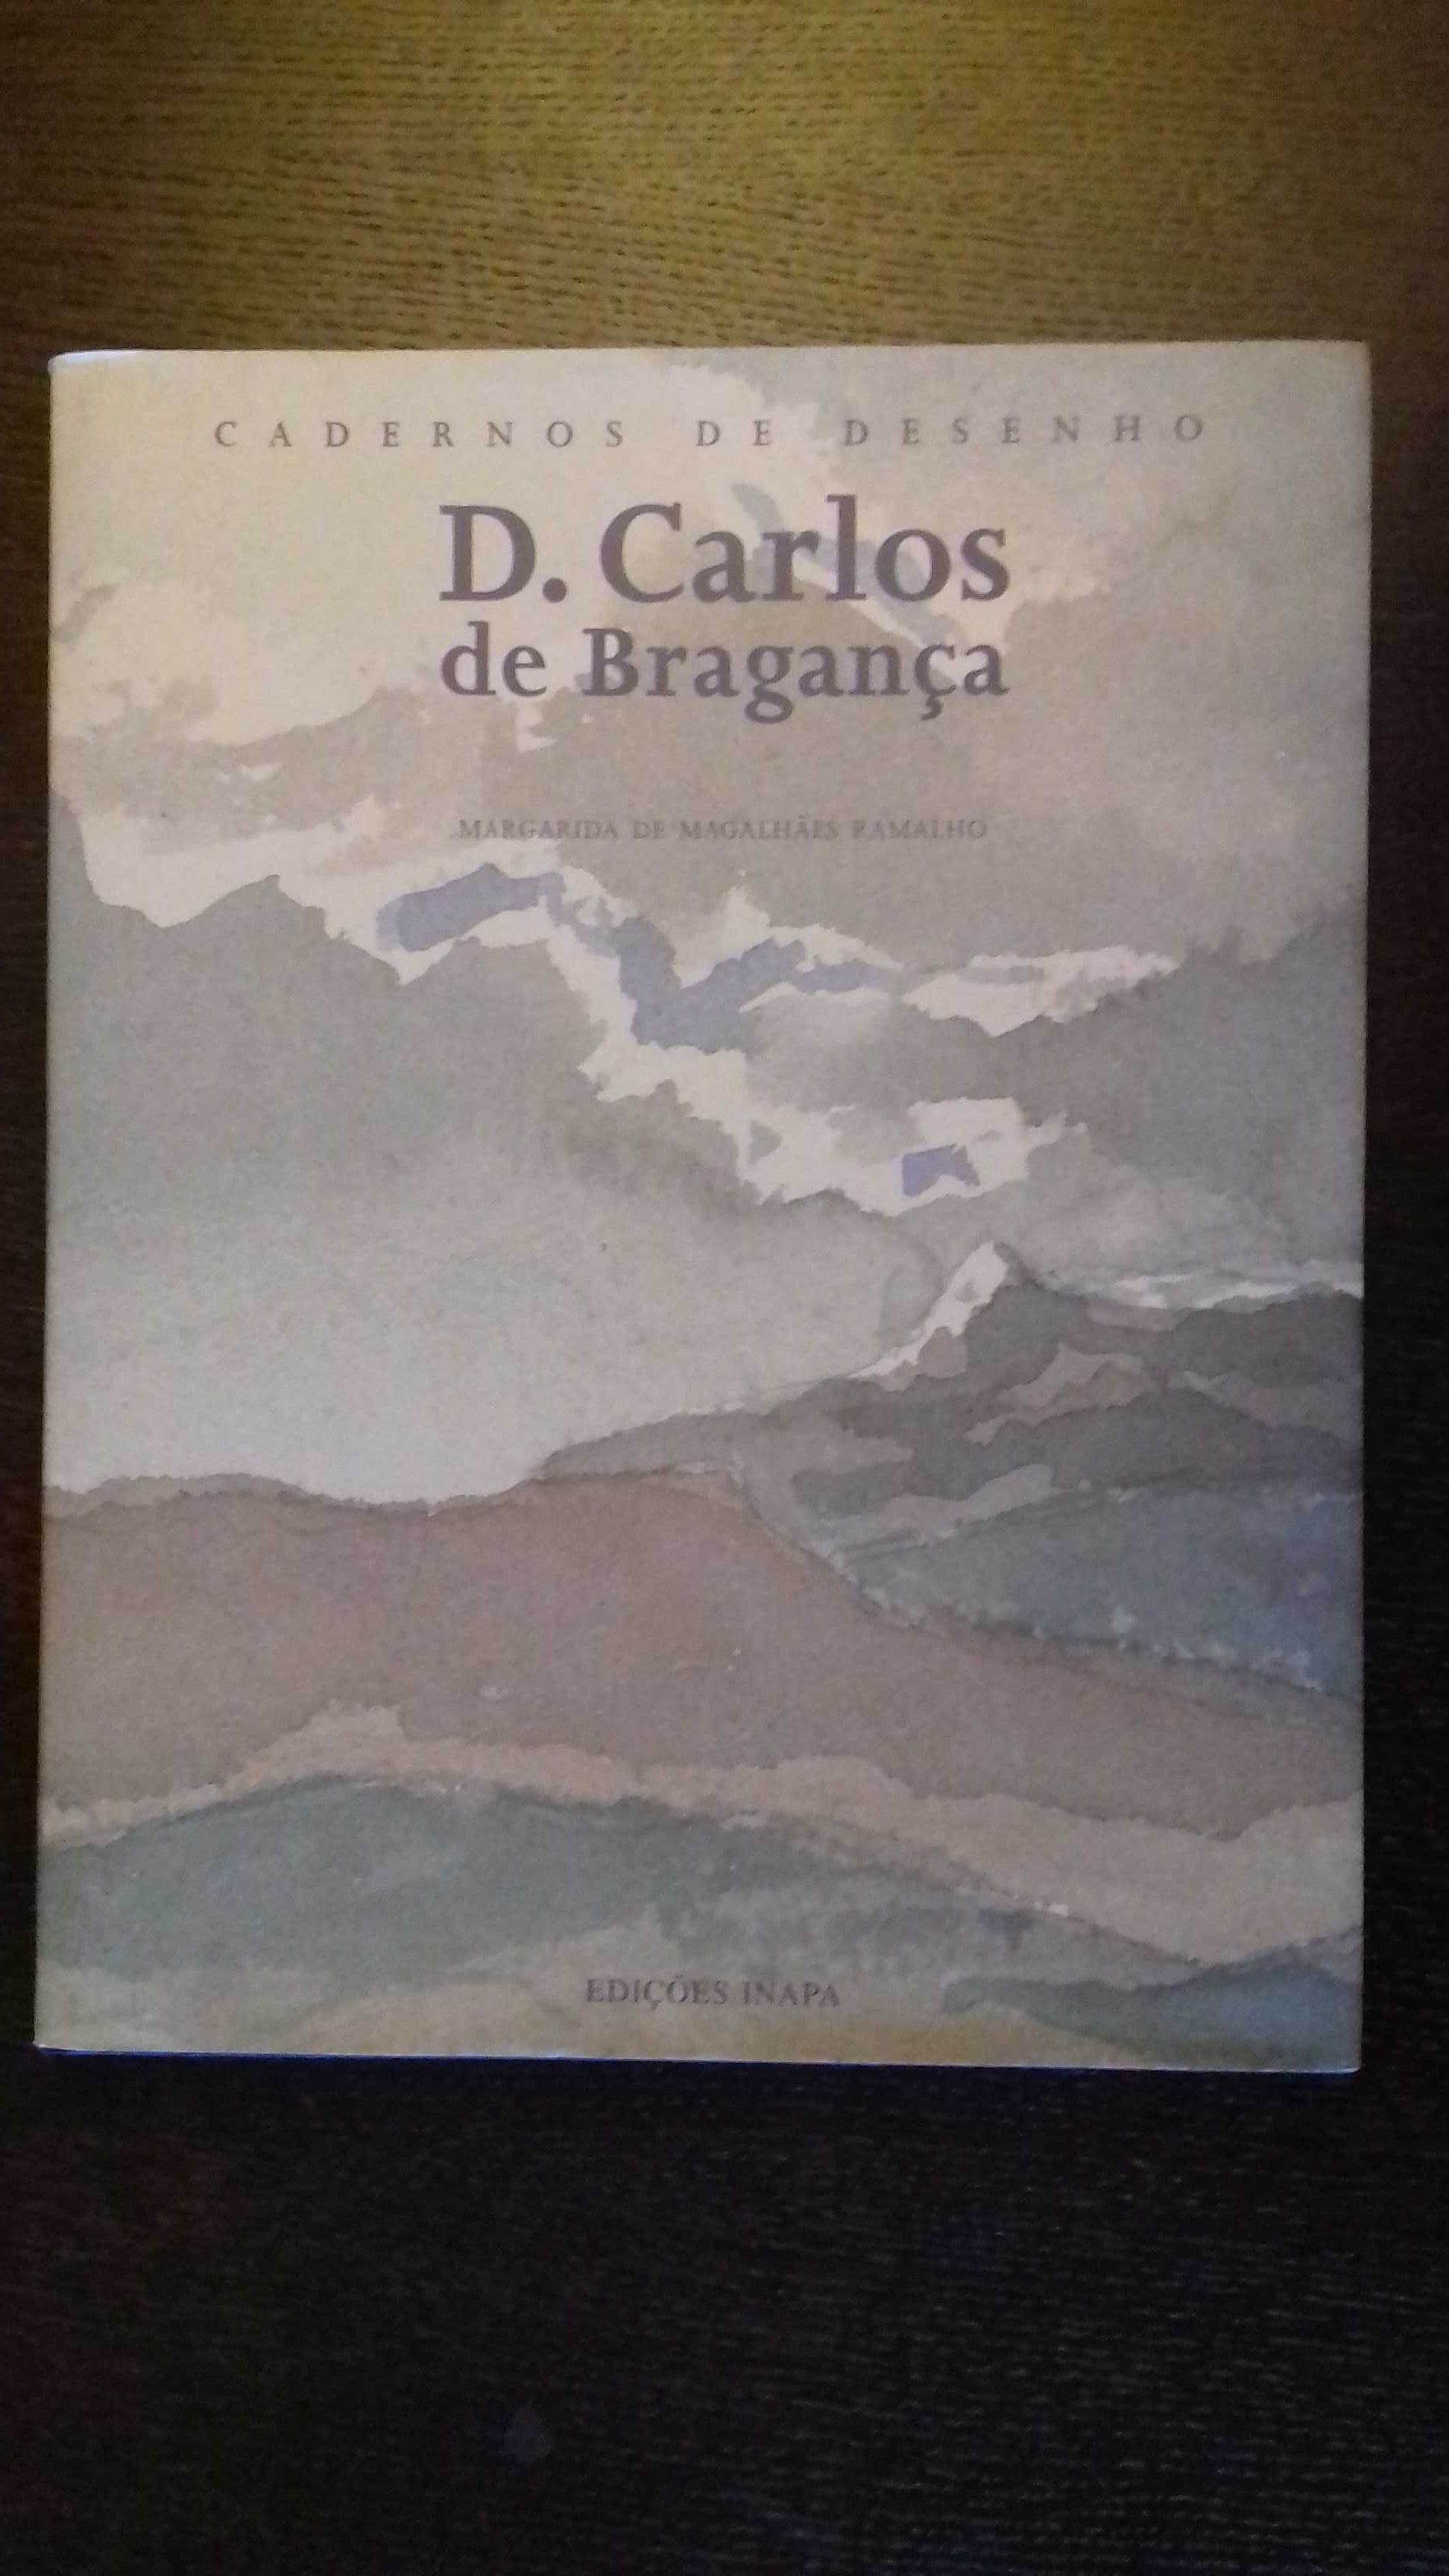 Cadernos de desenho D. Carlos de Bragança